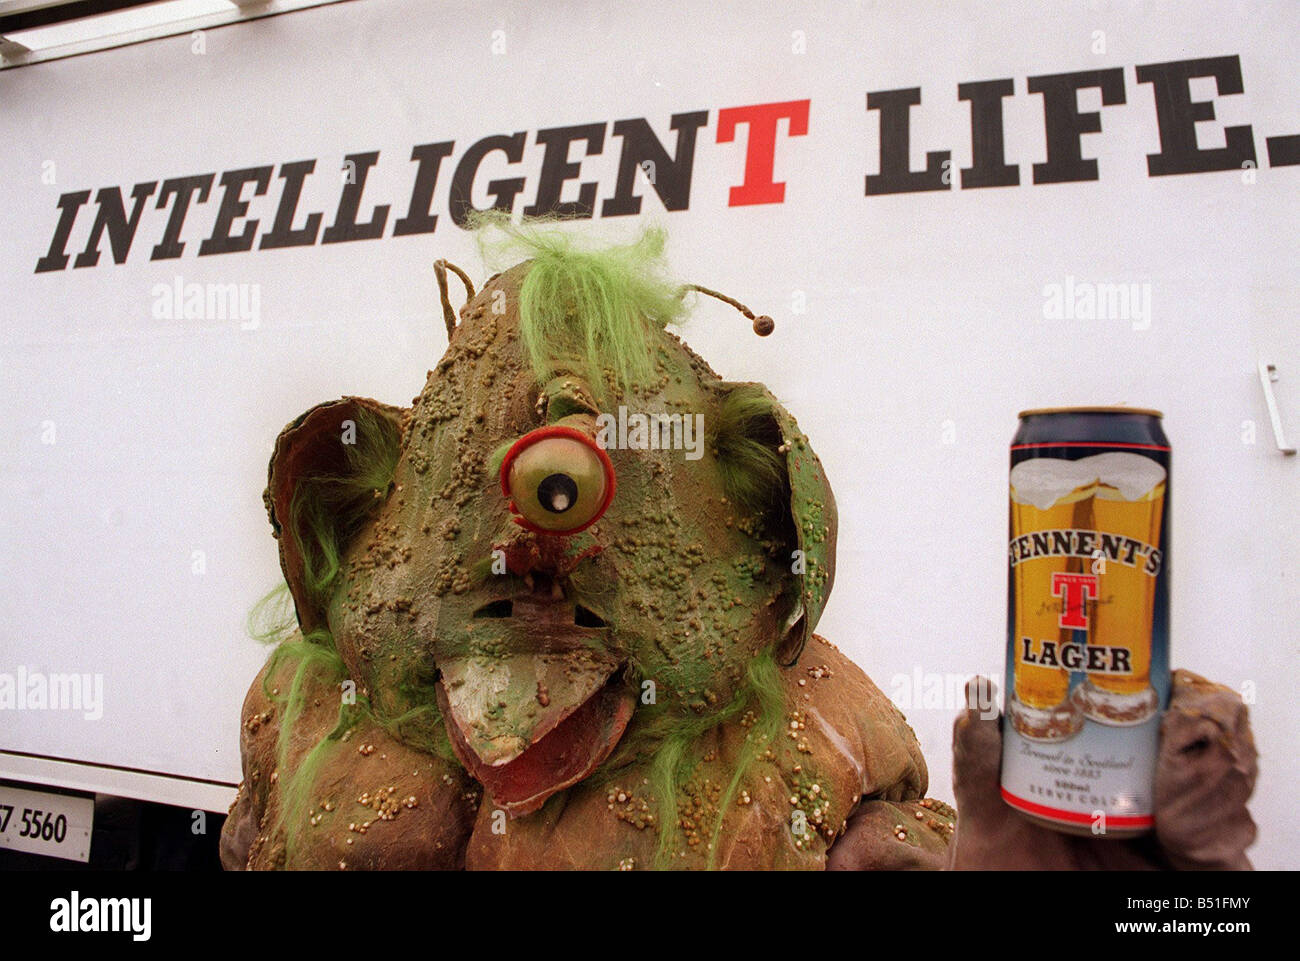 Tennents Lager offre spéciale le spot de promotion de l'étranger peuvent maintenant lager monster l'espace ovni Banque D'Images